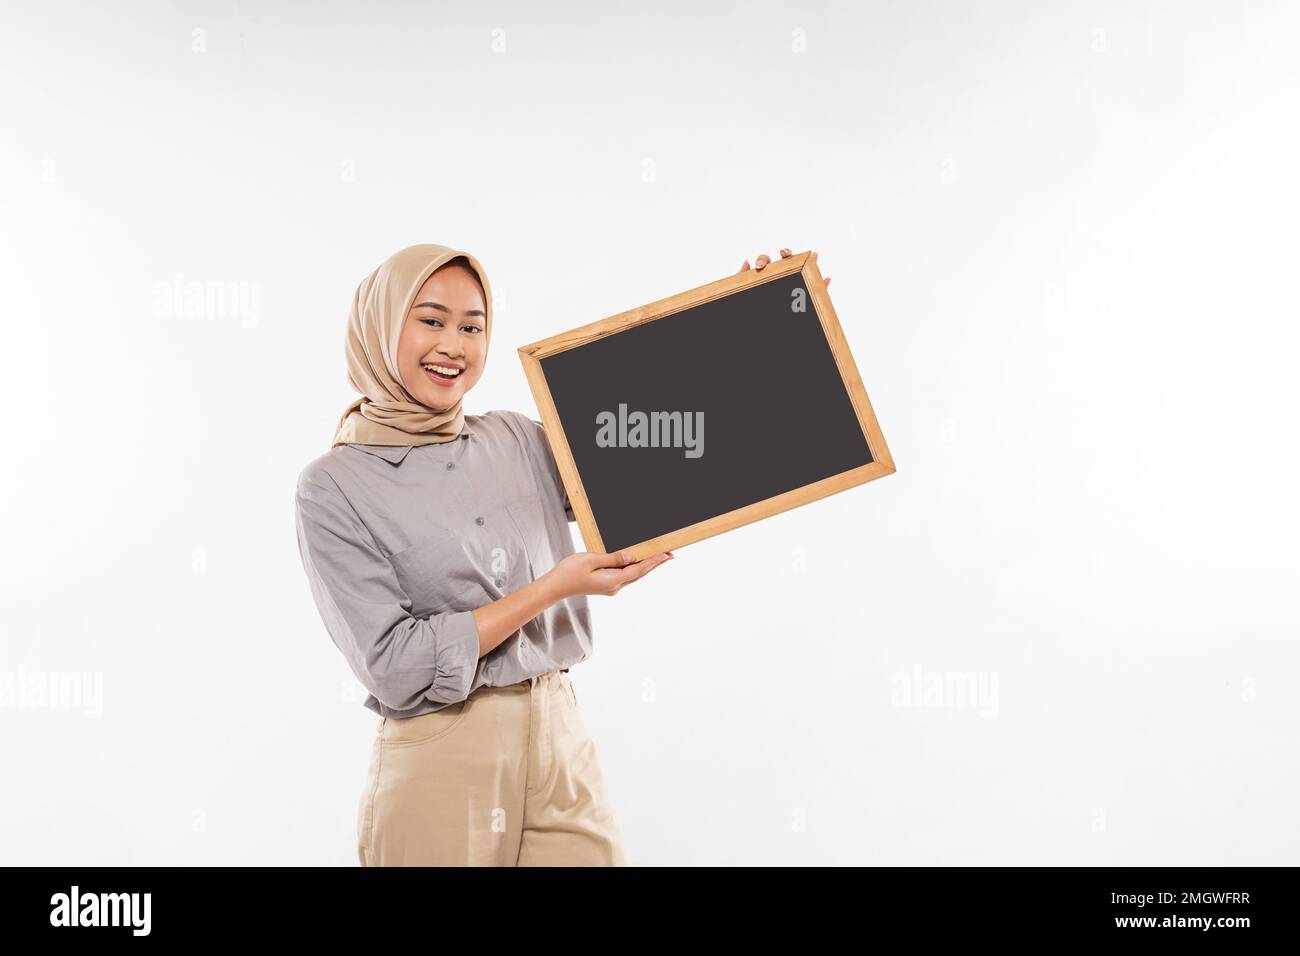 une belle femme avec hijab debout et montrant avec enthousiasme le tableau noir Banque D'Images